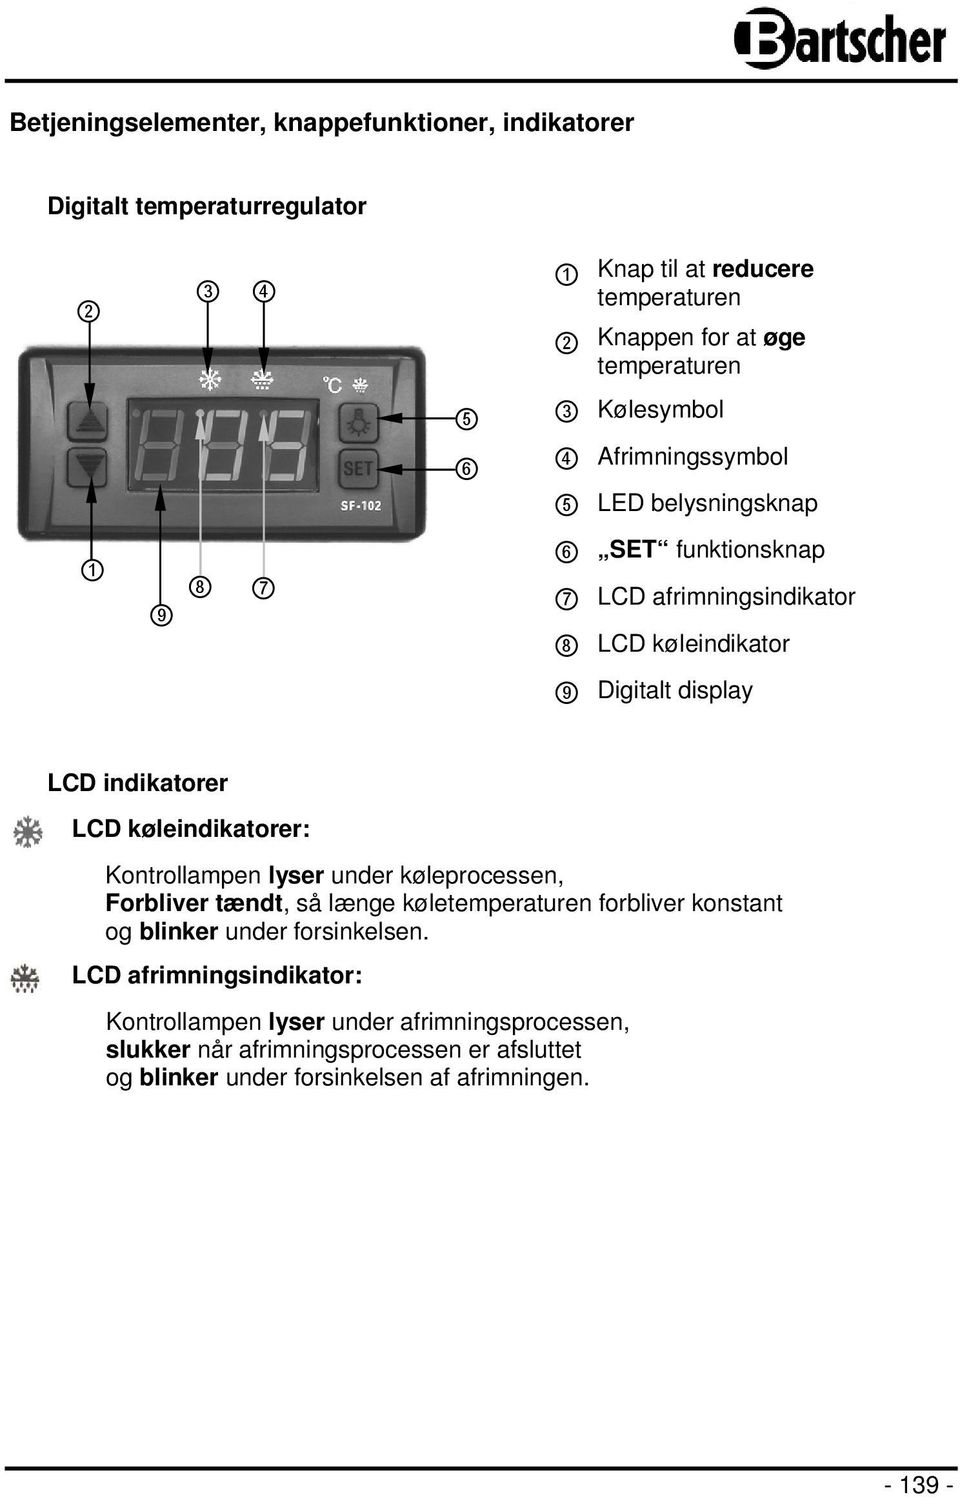 LCD køleindikatorer: Kontrollampen lyser under køleprocessen, Forbliver tændt, så længe køletemperaturen forbliver konstant og blinker under forsinkelsen.